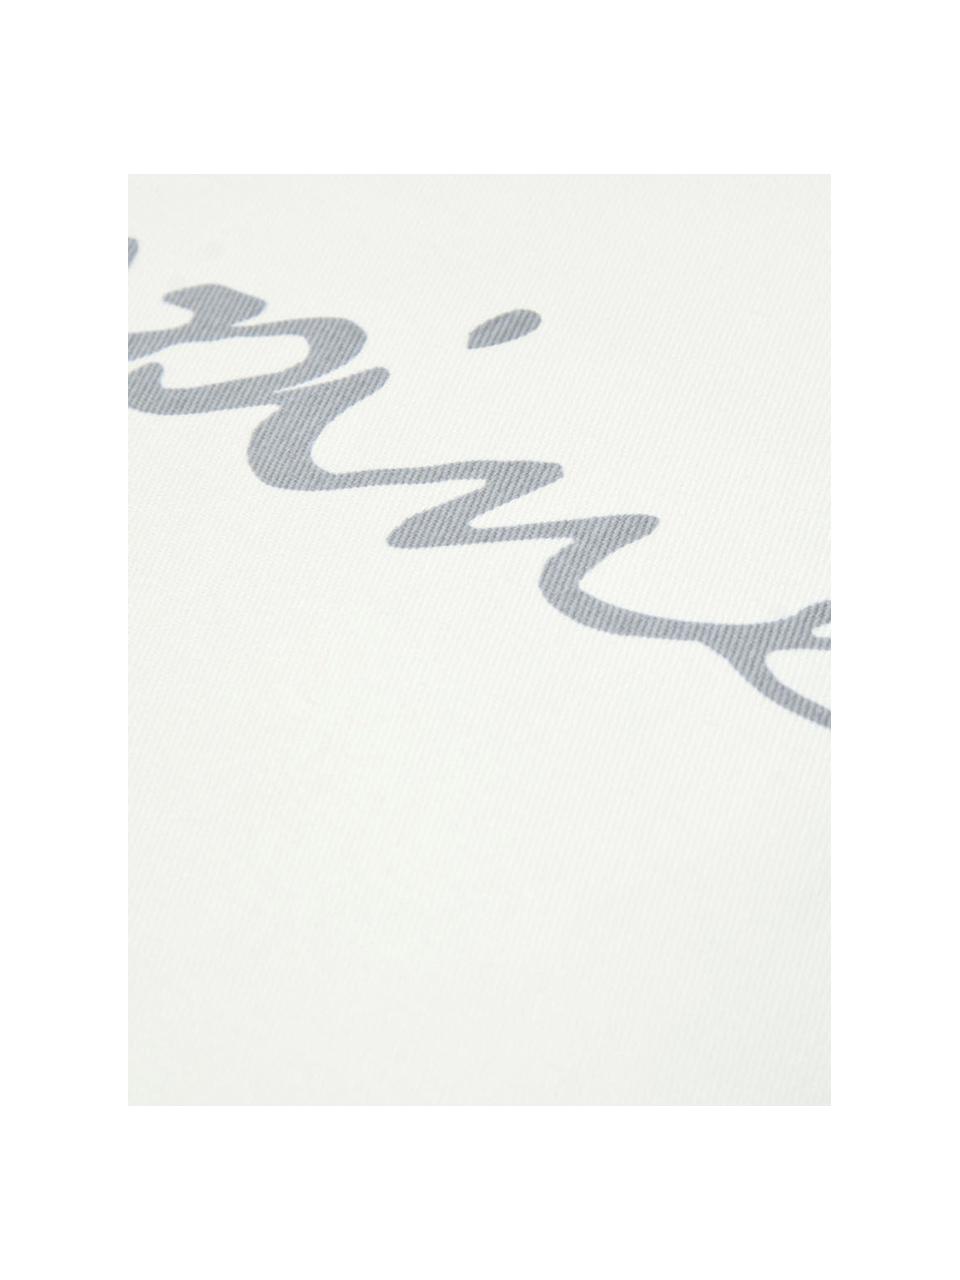 Kussenhoes Happiness met opschrift, 100% katoen, panamabinding, Grijs, crèmekleurig, 40 x 40 cm